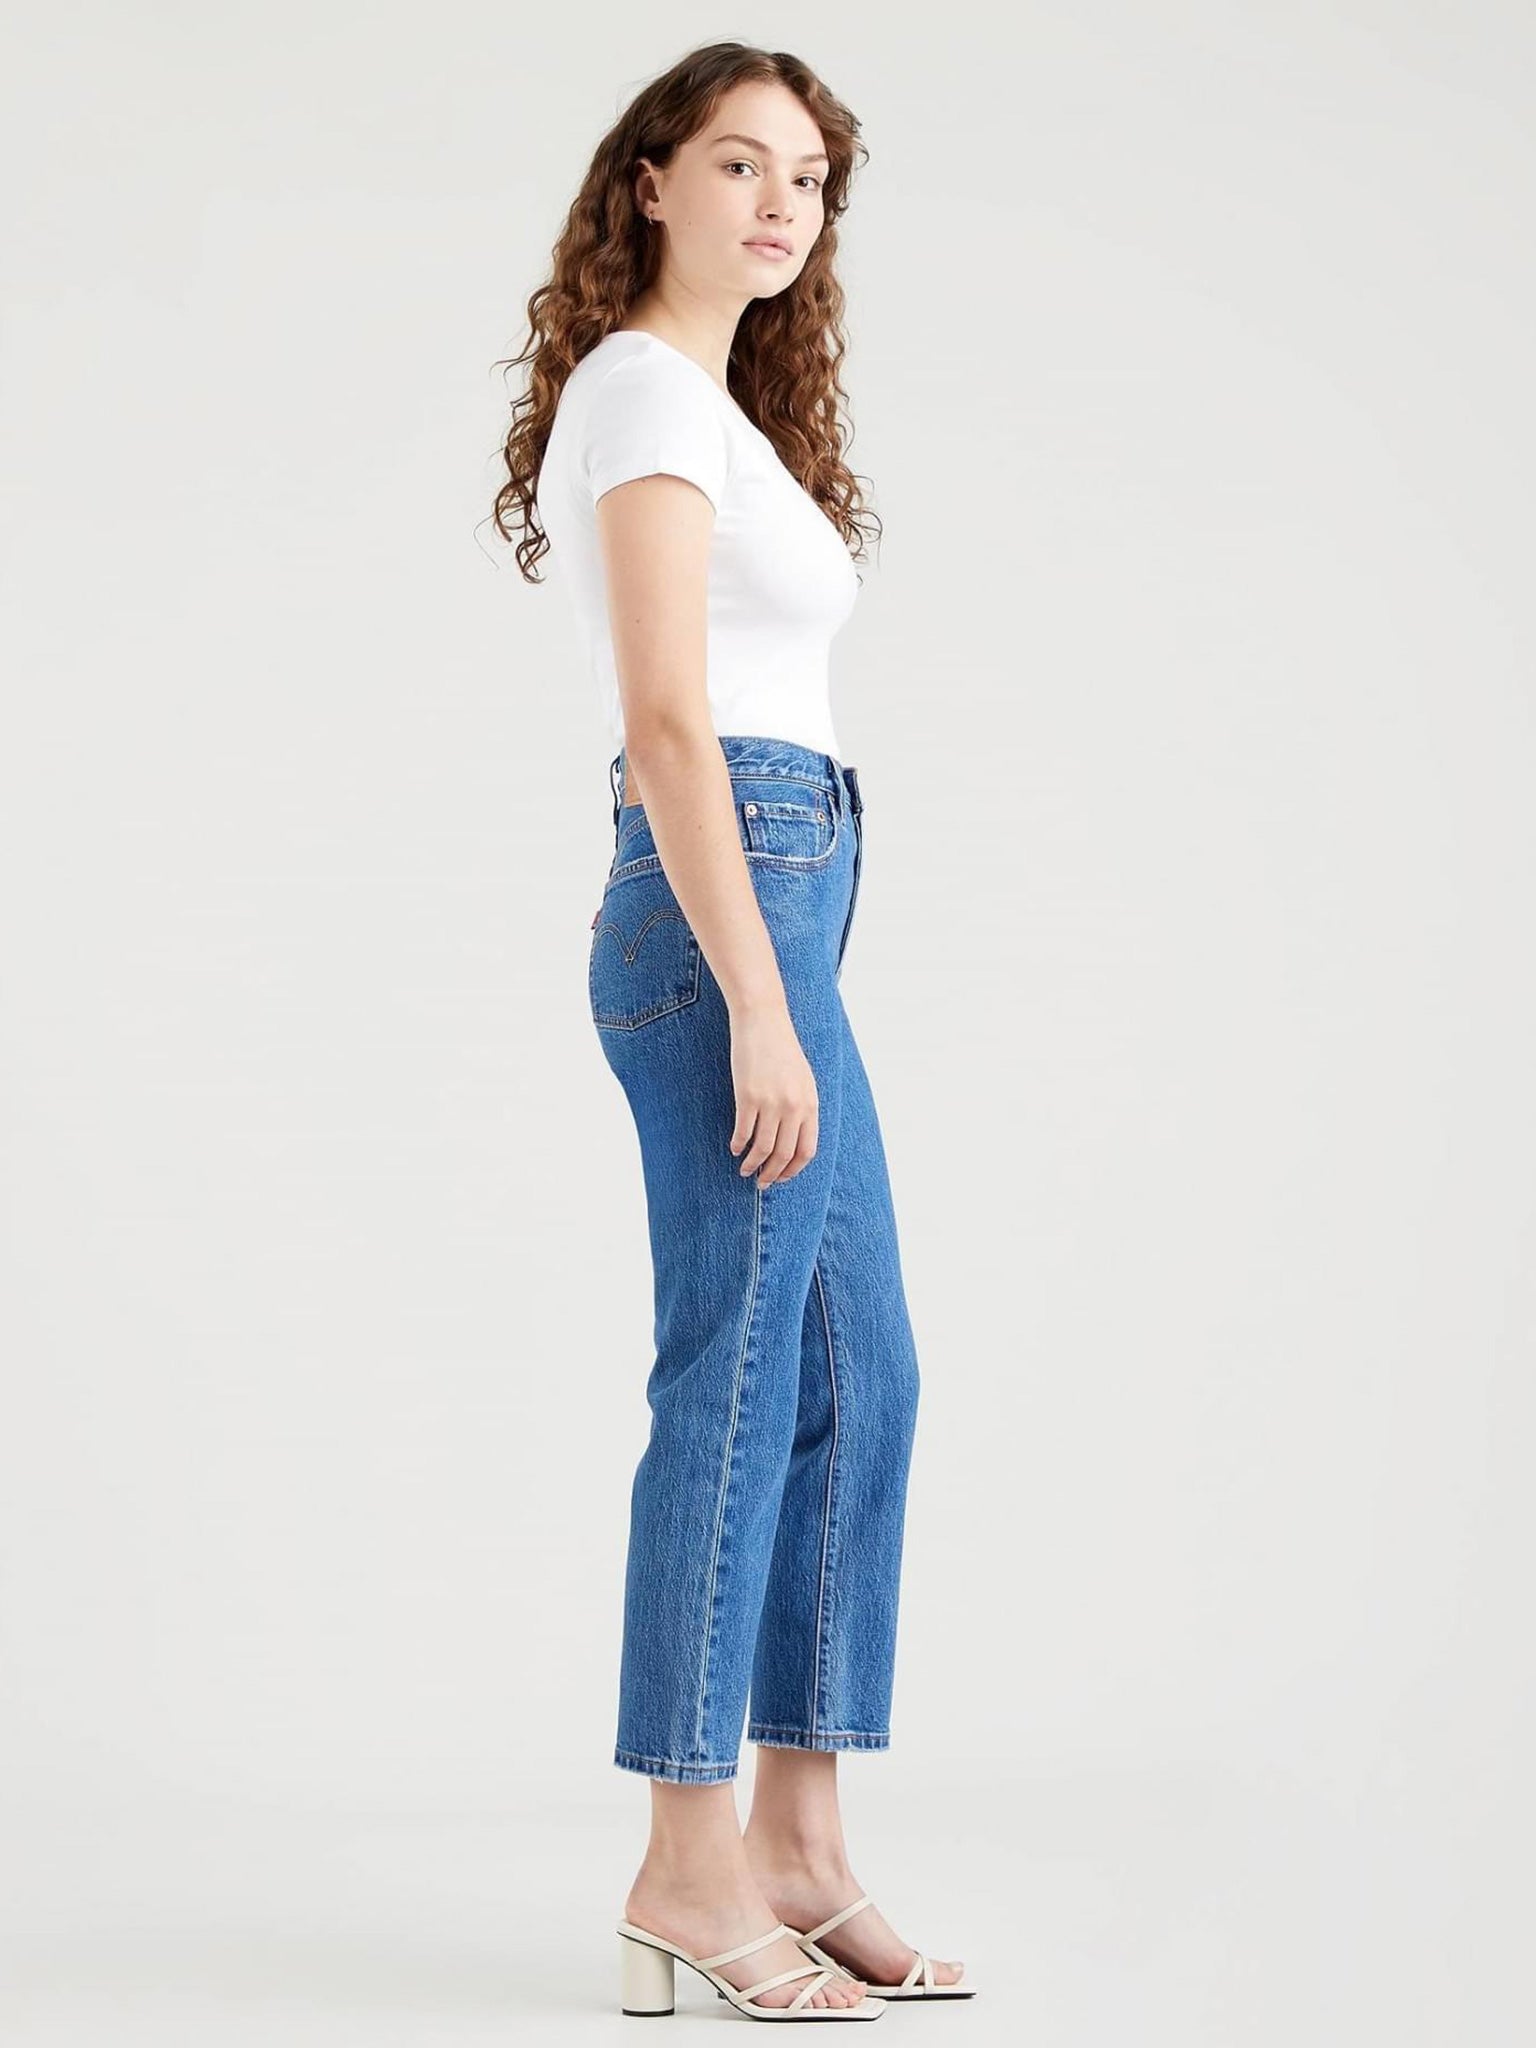 Γυναικείο παντελόνι τζιν 501® Crop Jeans 362000225 | 362000225